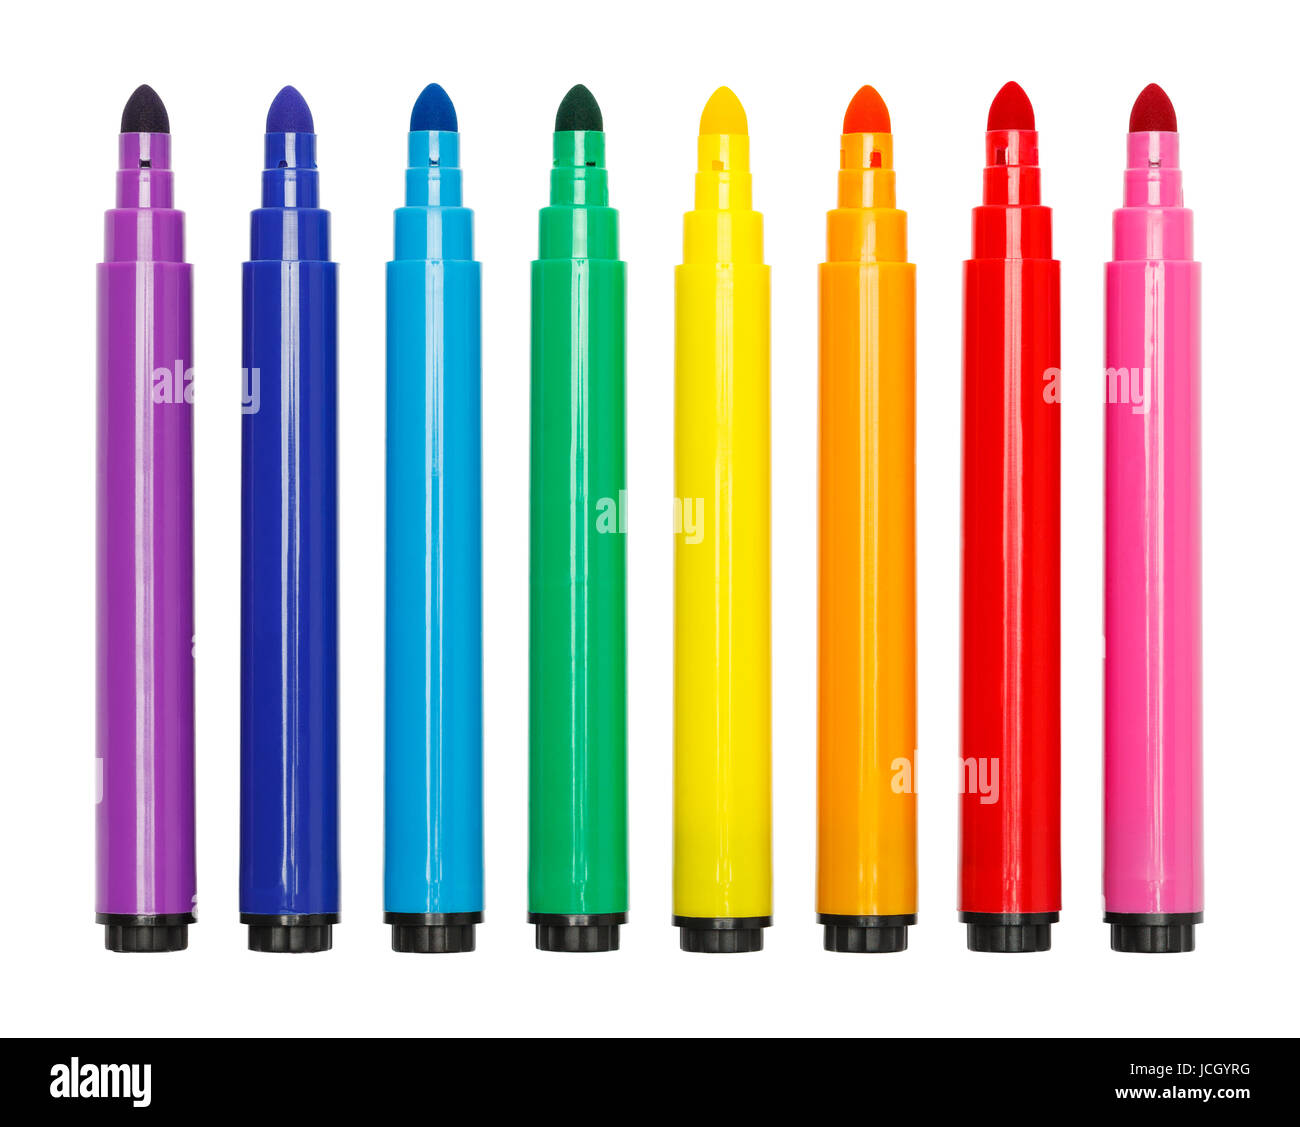 Evidenziatori Colorati in Diversi Colori Immagine Stock - Immagine di  colore, colorato: 223472527